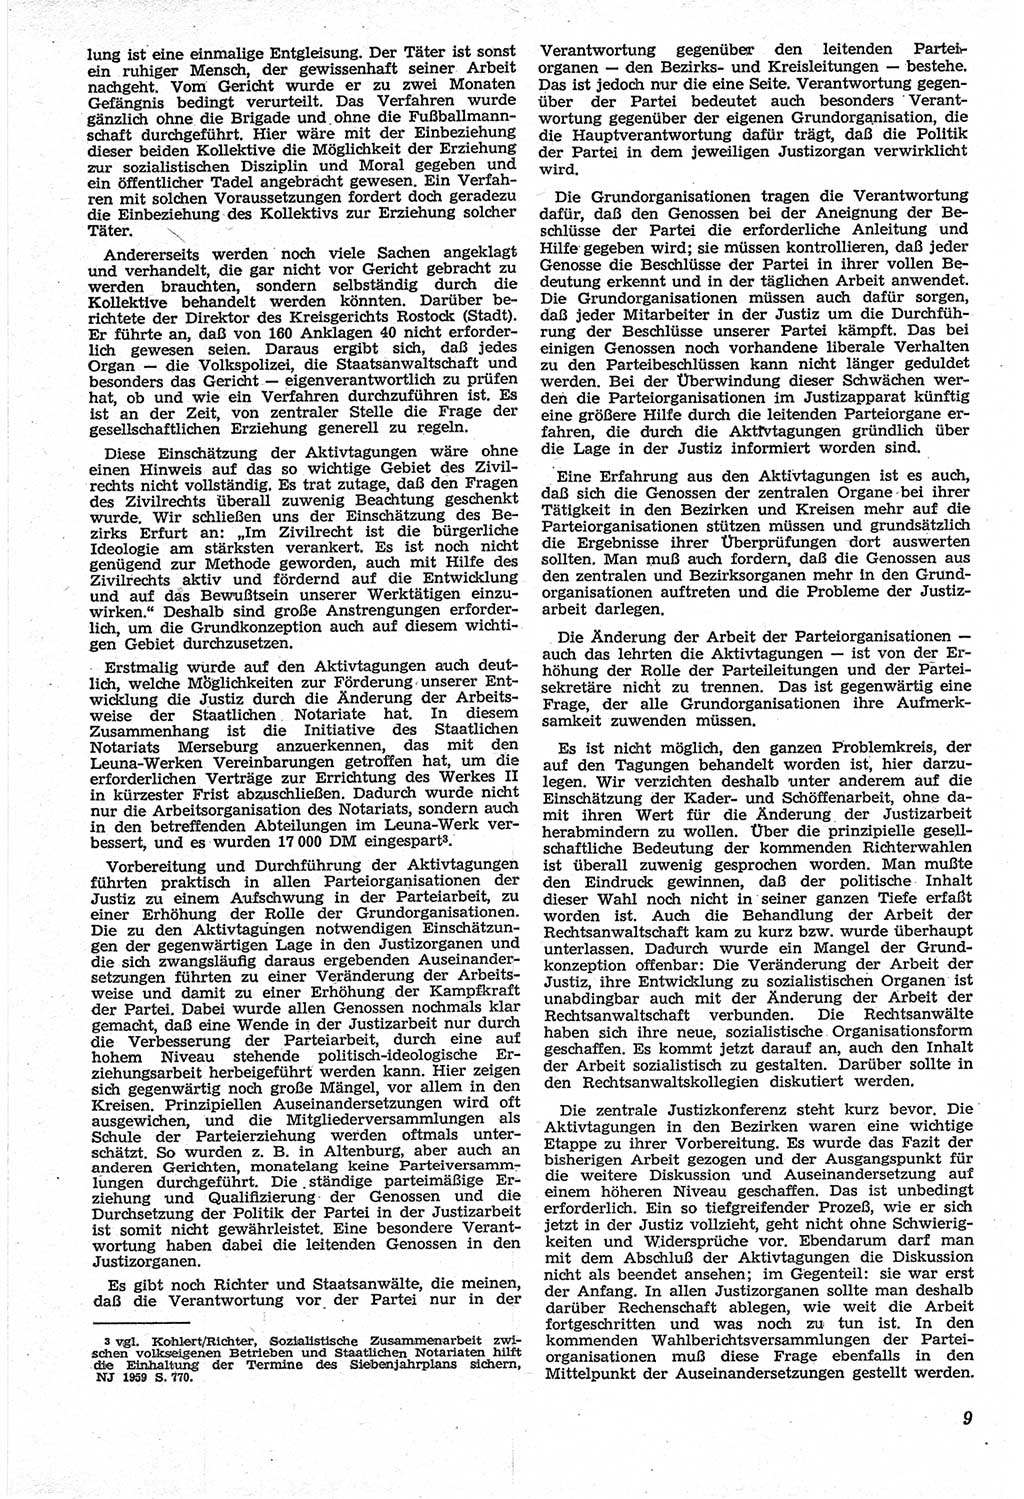 Neue Justiz (NJ), Zeitschrift für Recht und Rechtswissenschaft [Deutsche Demokratische Republik (DDR)], 14. Jahrgang 1960, Seite 9 (NJ DDR 1960, S. 9)